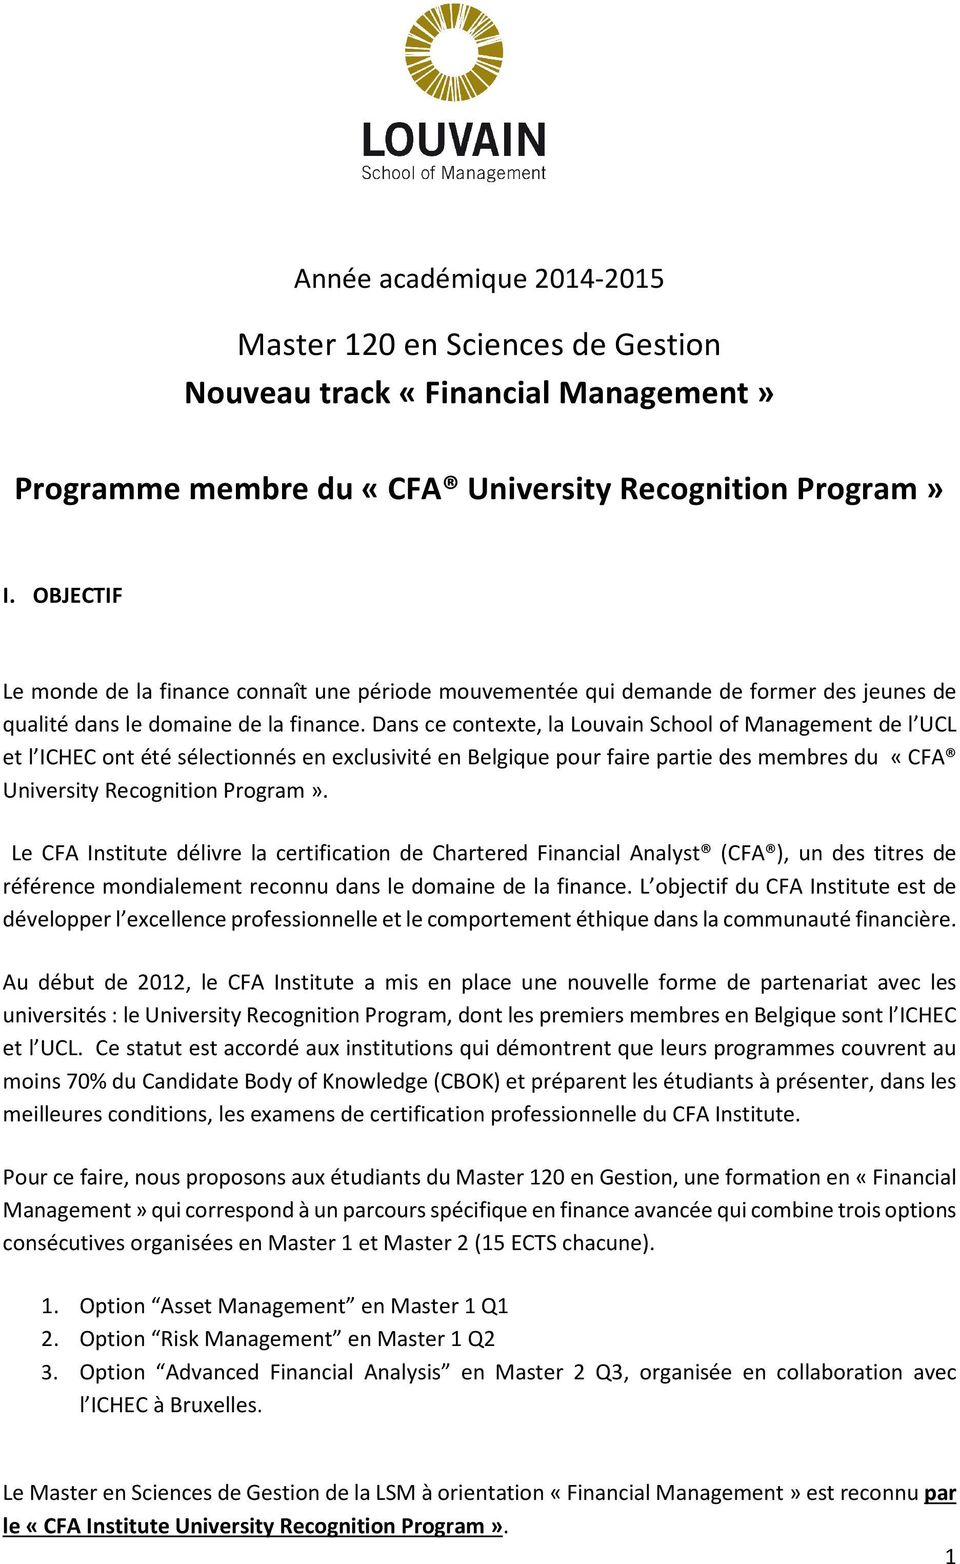 Dans ce contexte, la Louvain School of Management de l UCL et l ICHEC ont été sélectionnés en exclusivité en Belgique pour faire partie des membres du «CFA University Recognition Program».